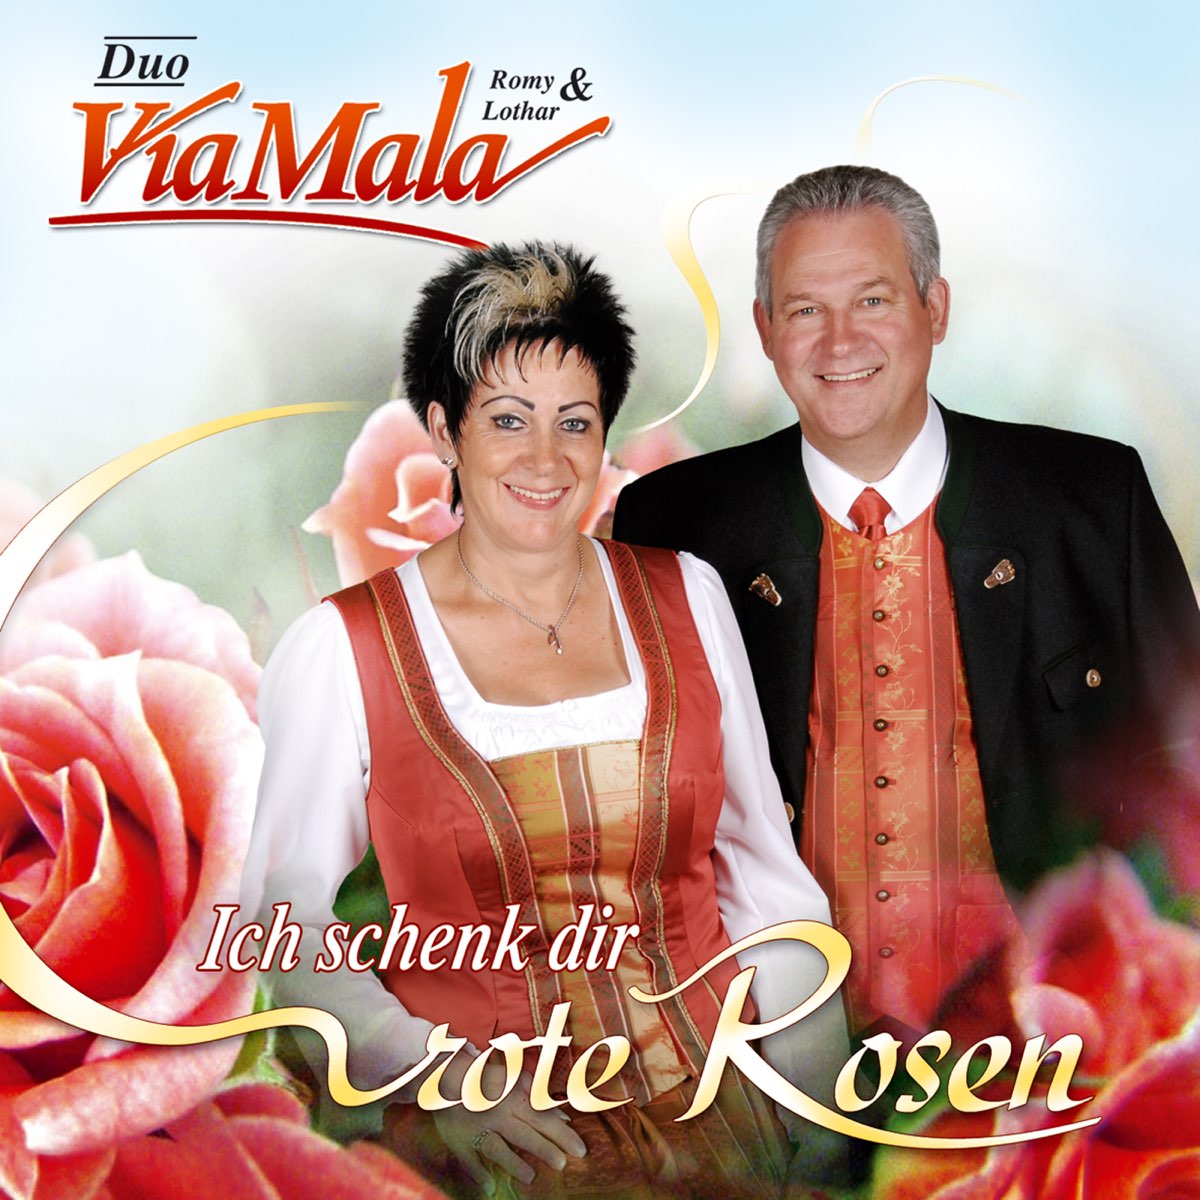 Ich schenk dir rote Rosen by Duo Via Mala on Apple Music